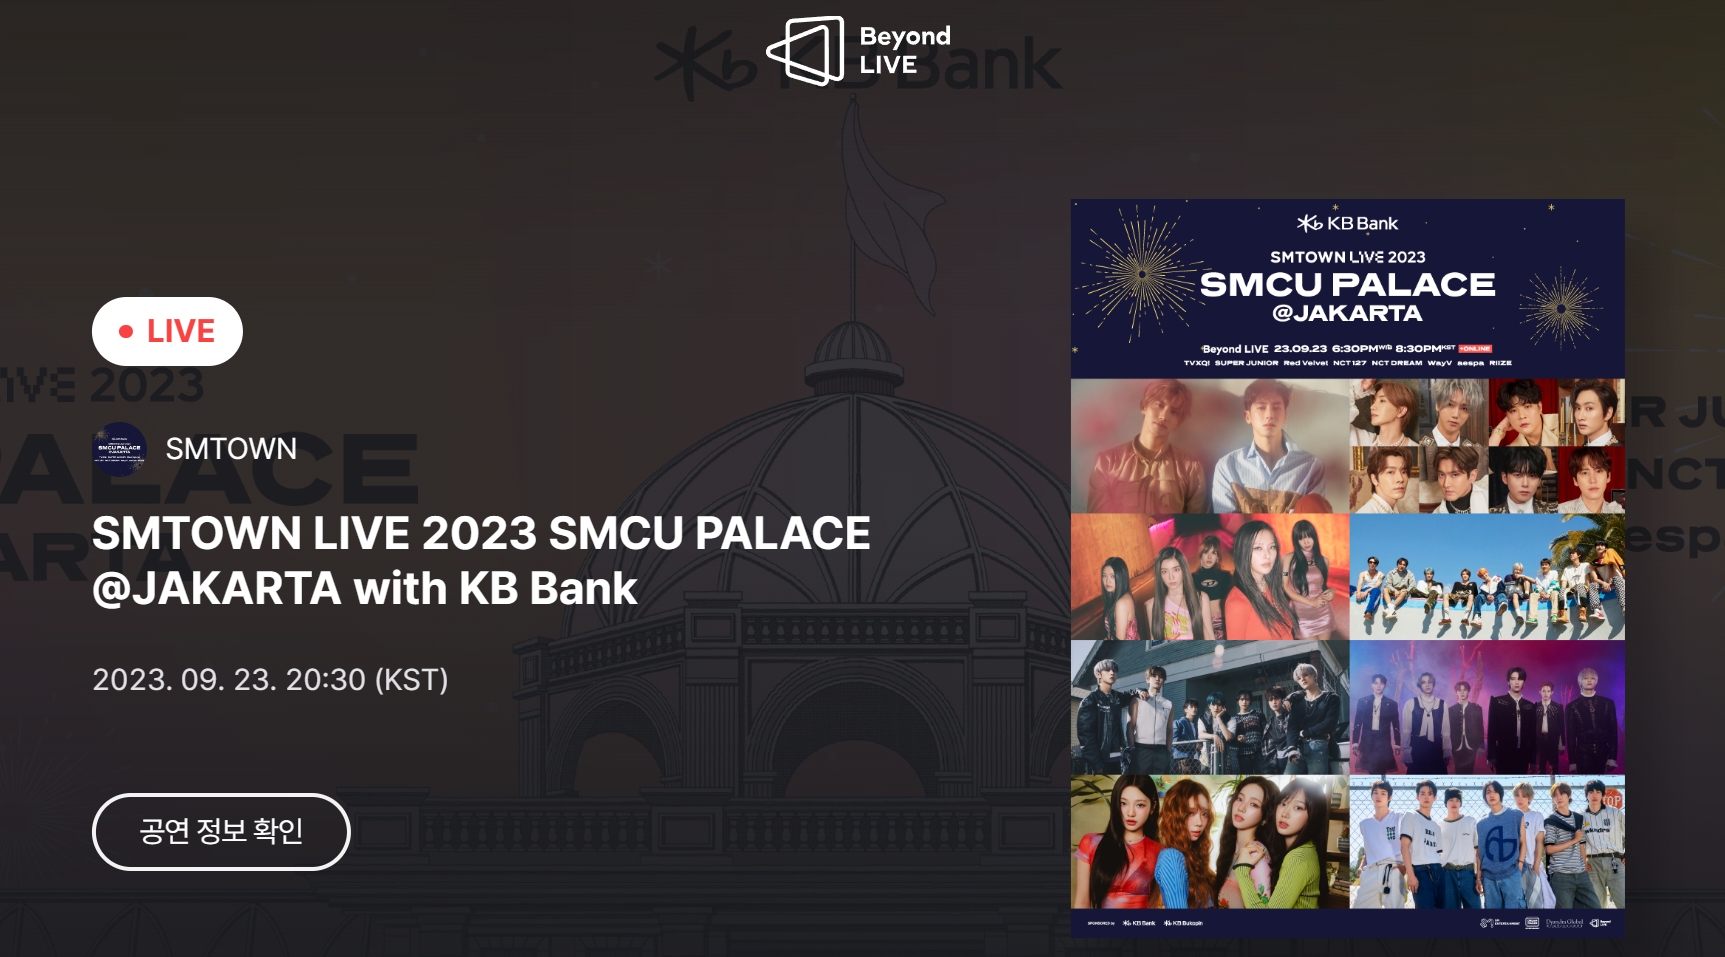 Beyond LIVE : SMTOWN LIVE 2023 SMCU PALACE @JAKARTA with KB Bank